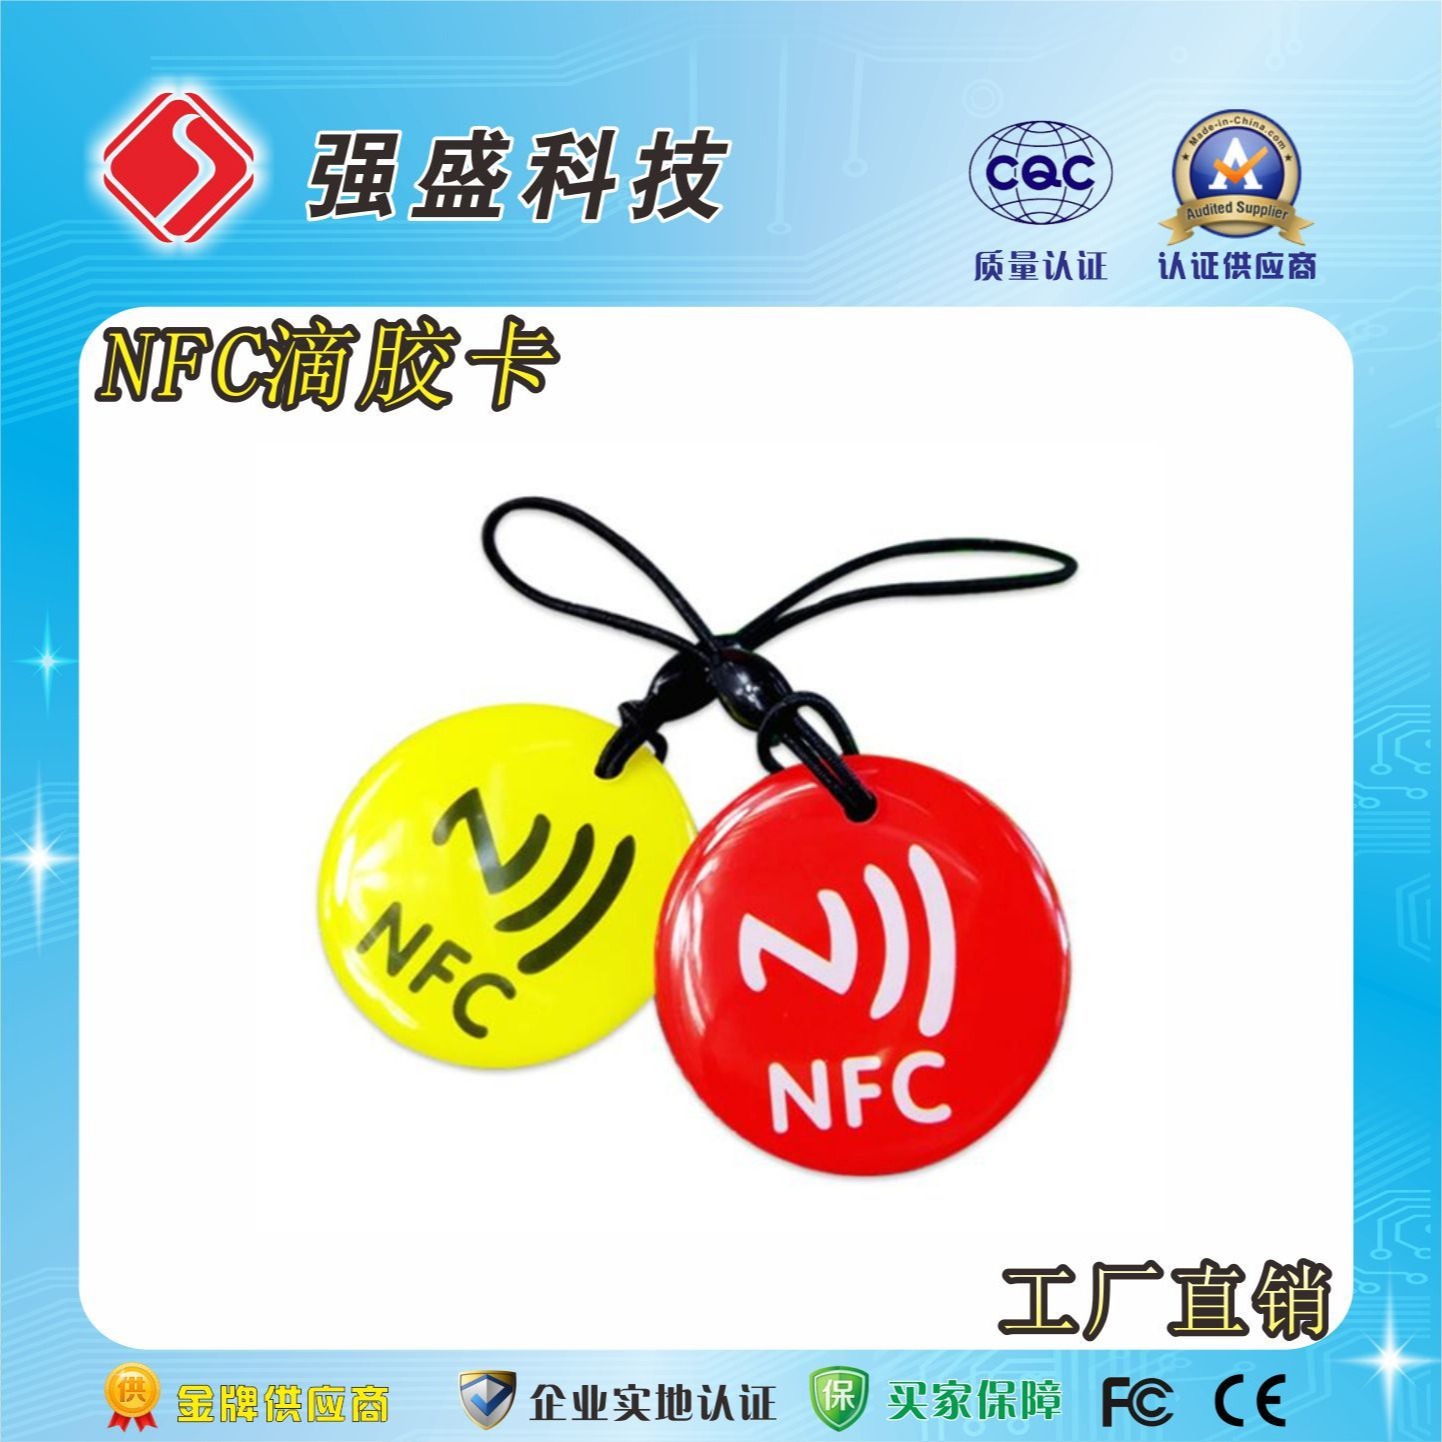 定制NFC芯片213滴胶卡 园区巡检标签 NFC巡检卡图片